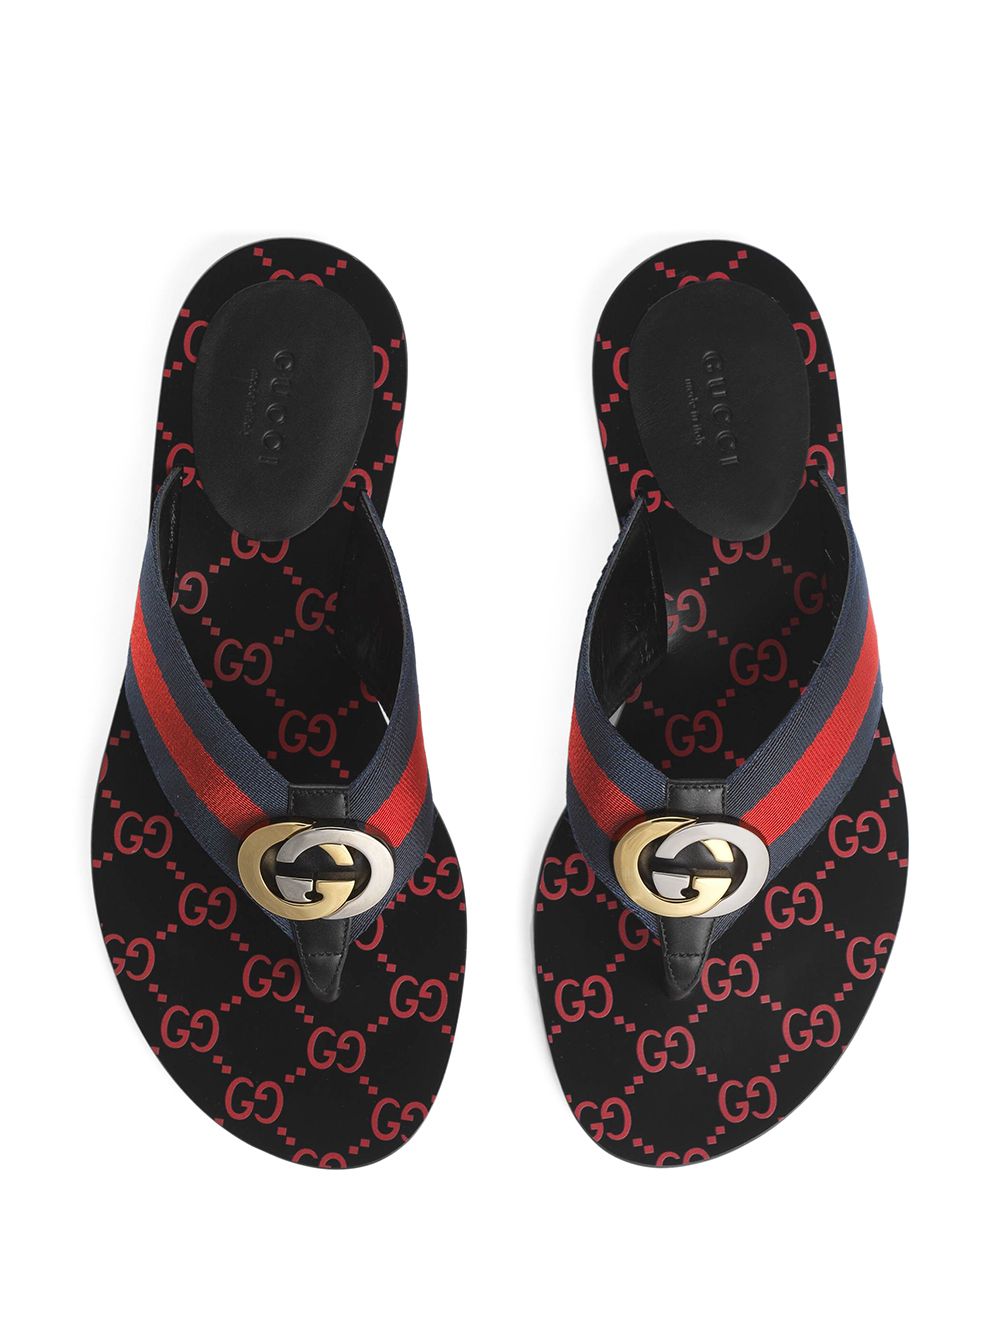 фото Gucci сандалии с логотипом gg и отделкой web